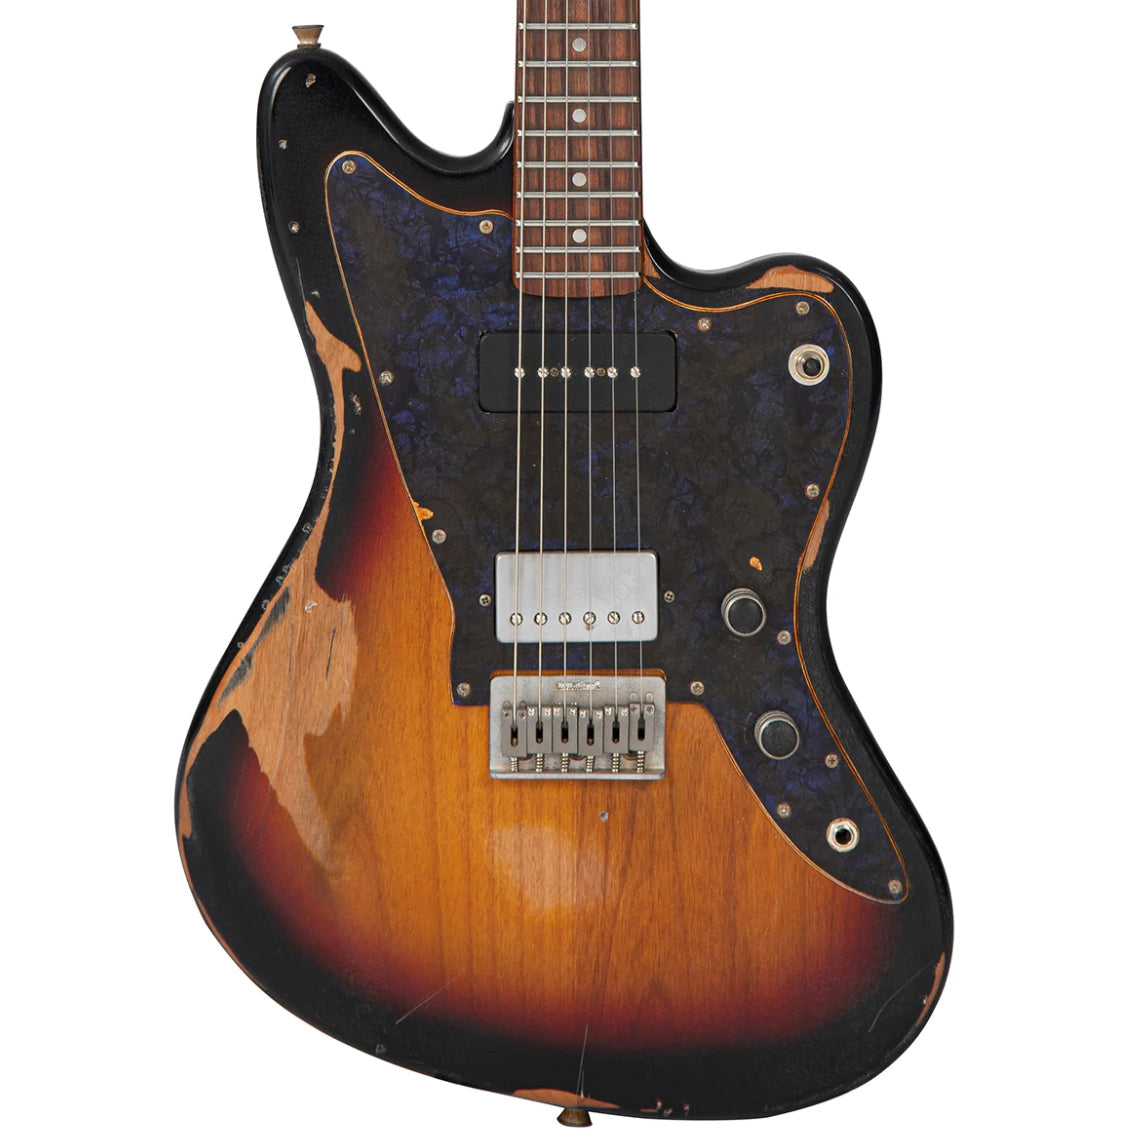 Vintage ProShop Unique - V65 Distressed., Electric Guitar for sale at Richards Guitars.